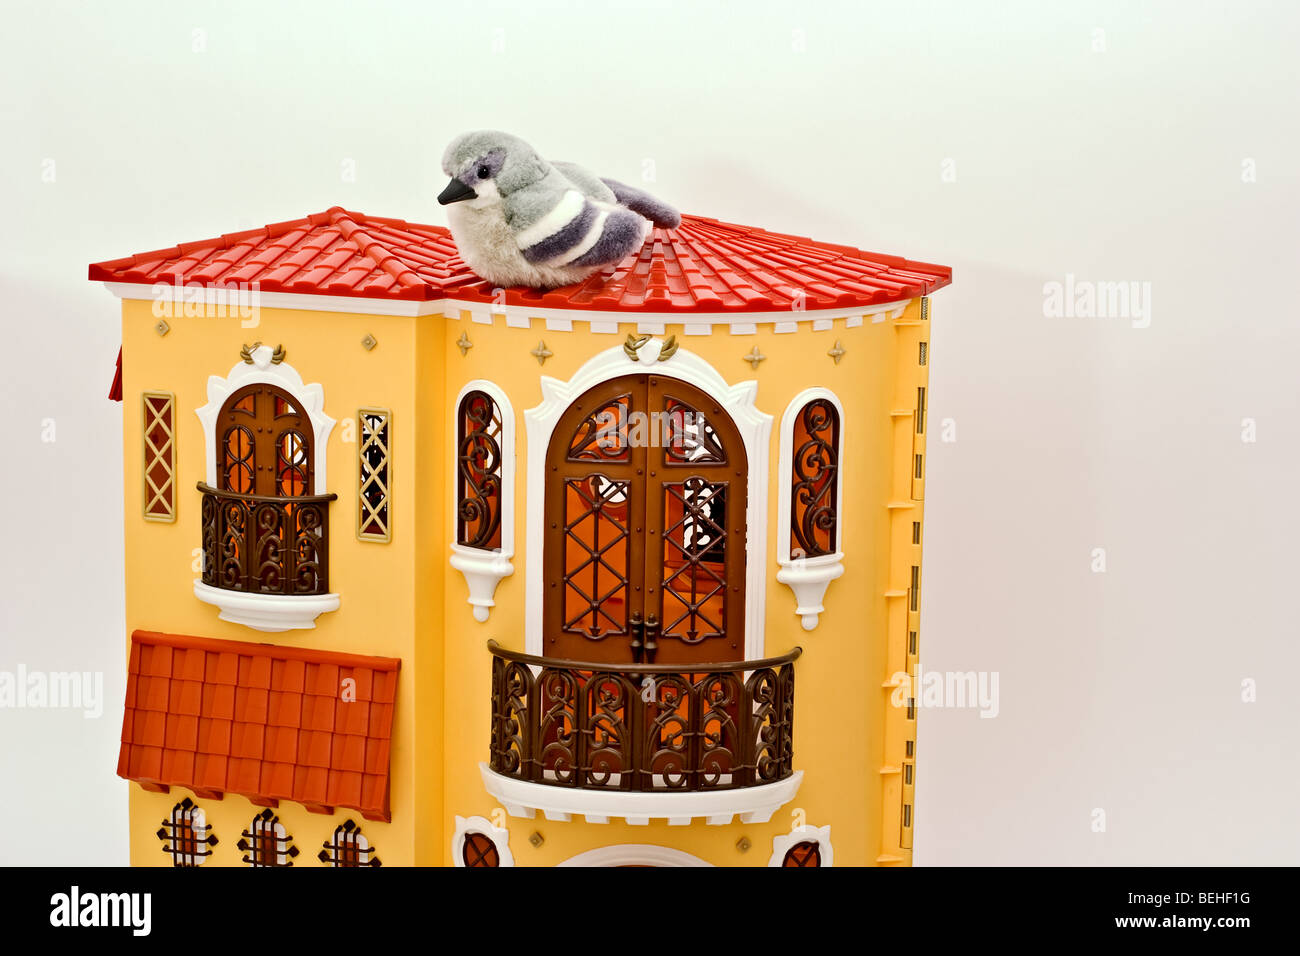 Vogel Spielzeug sitzt oben auf einer aufwendigen europäischen Stil Puppenhaus Stockfoto